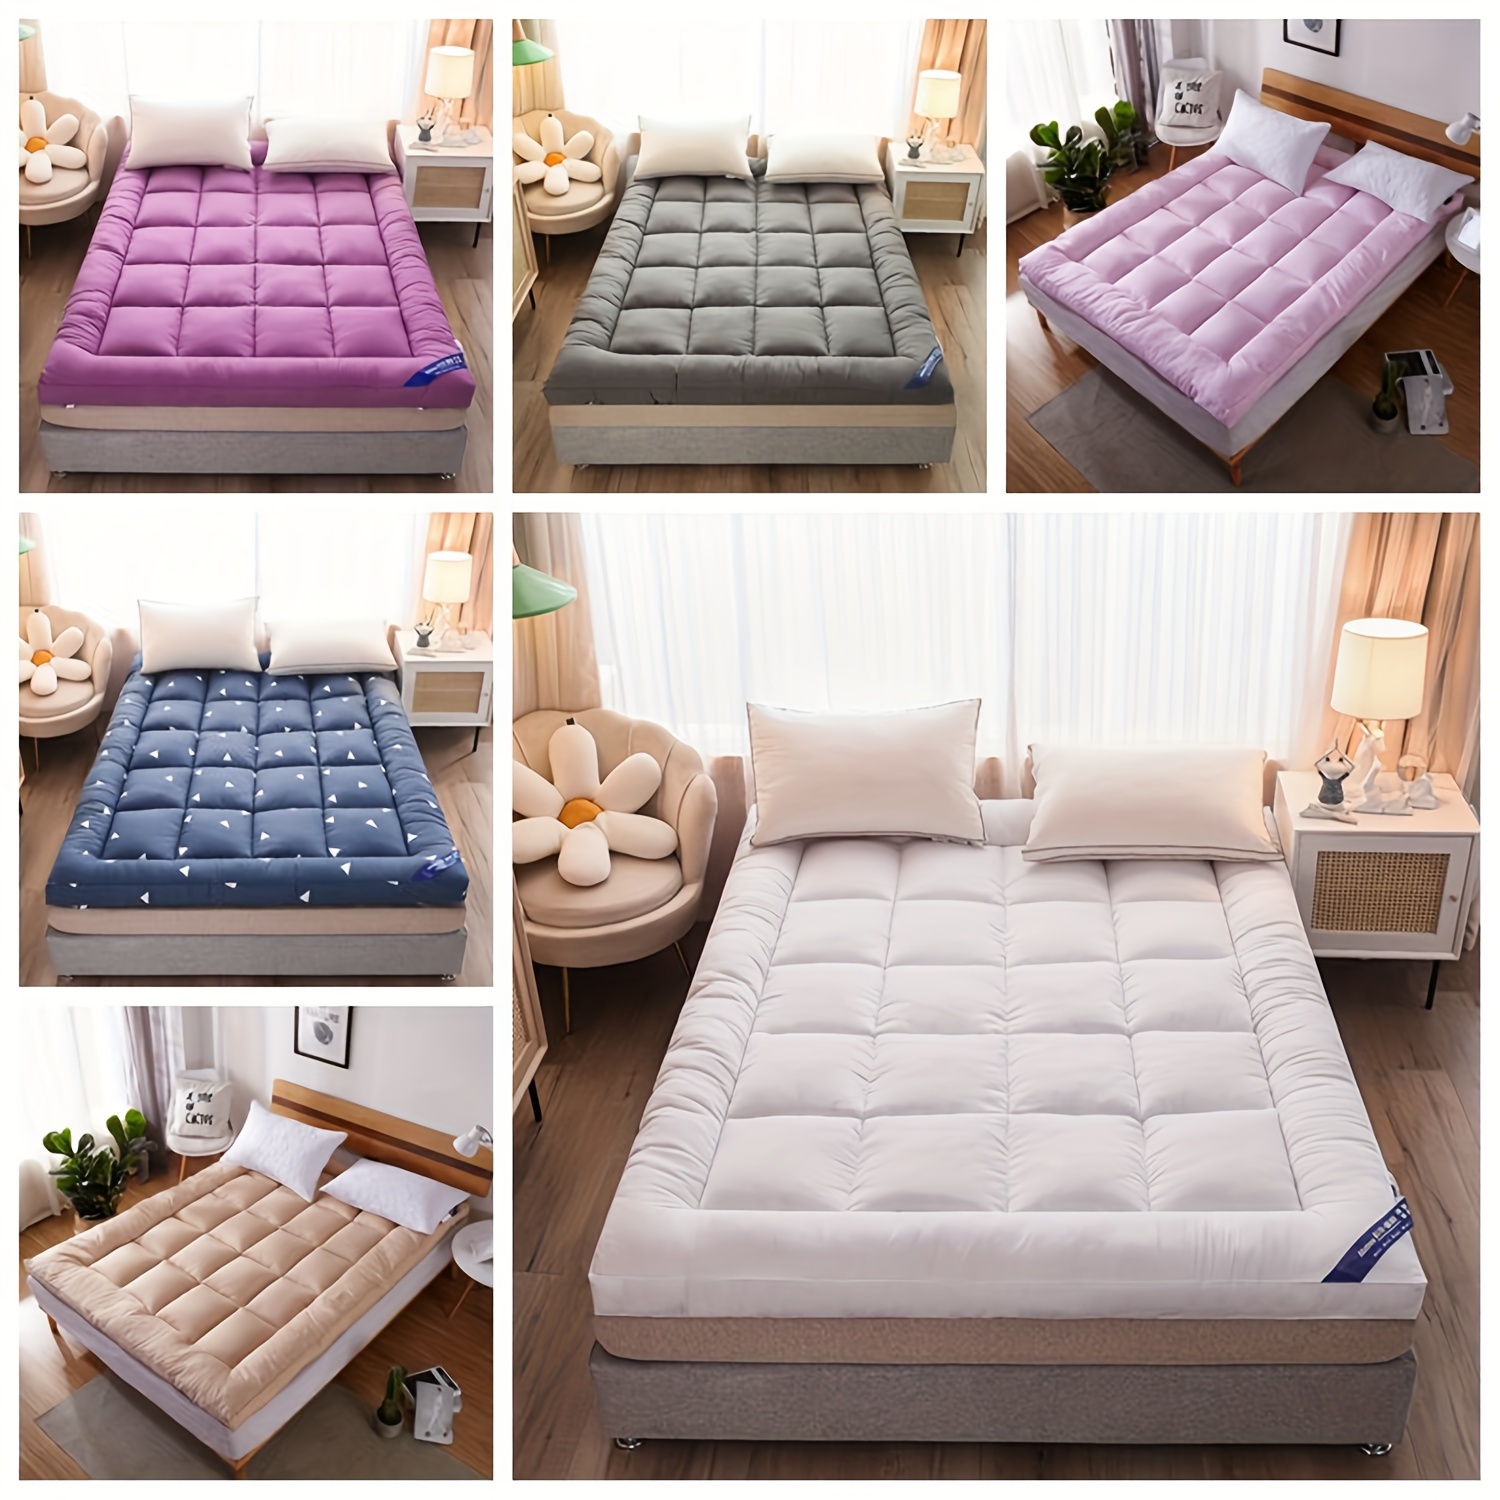  Colchón de doble cara de uso futón, colchón enrollable